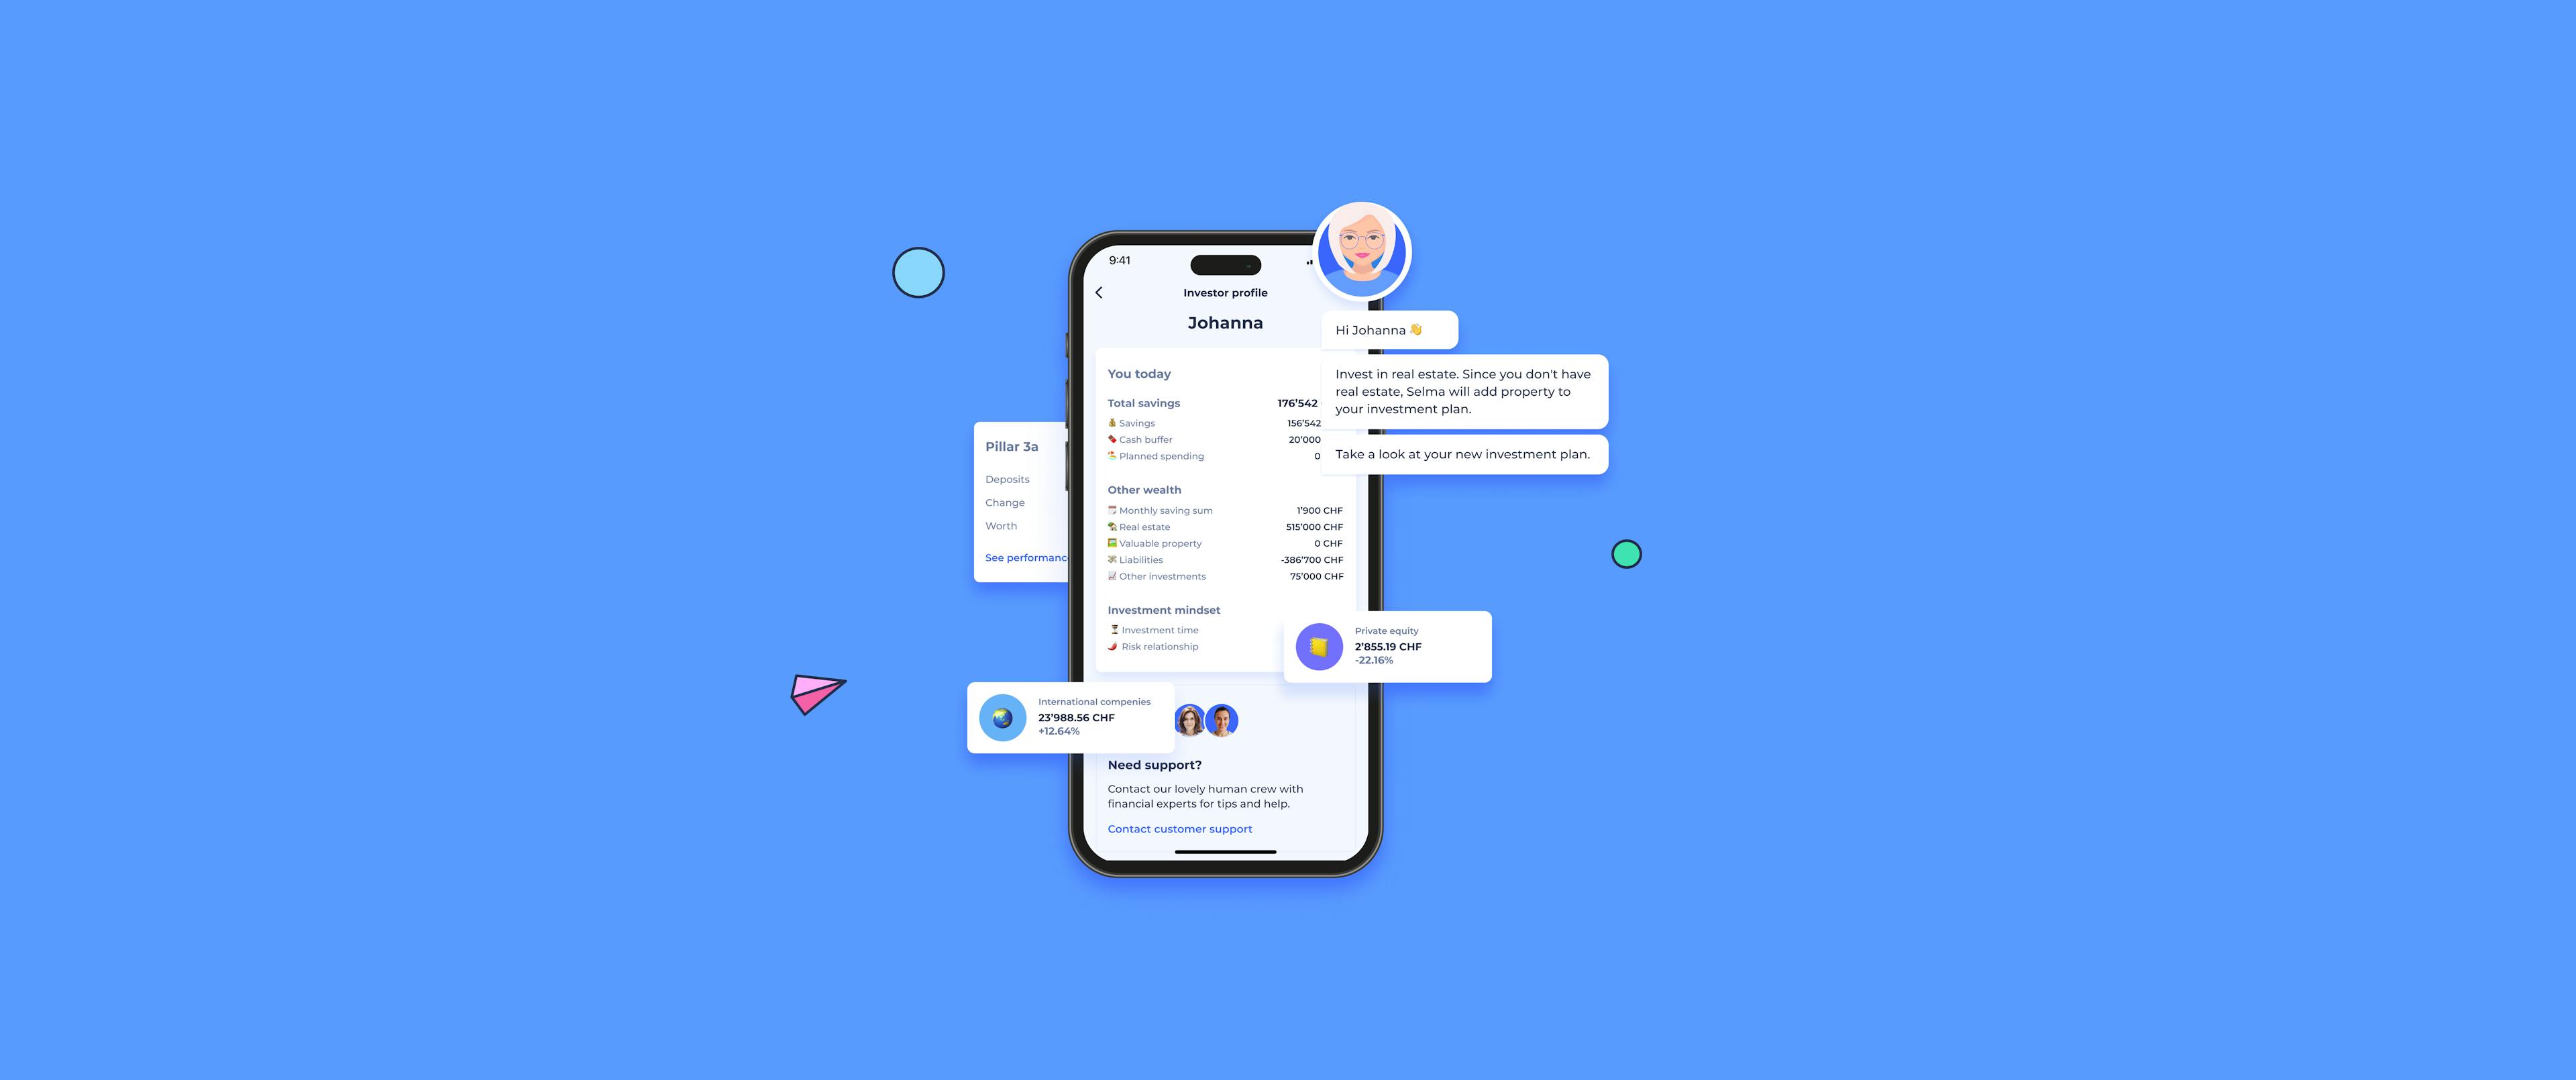 Selmas Investment-App dargestellt auf einem blauen Hintergrund